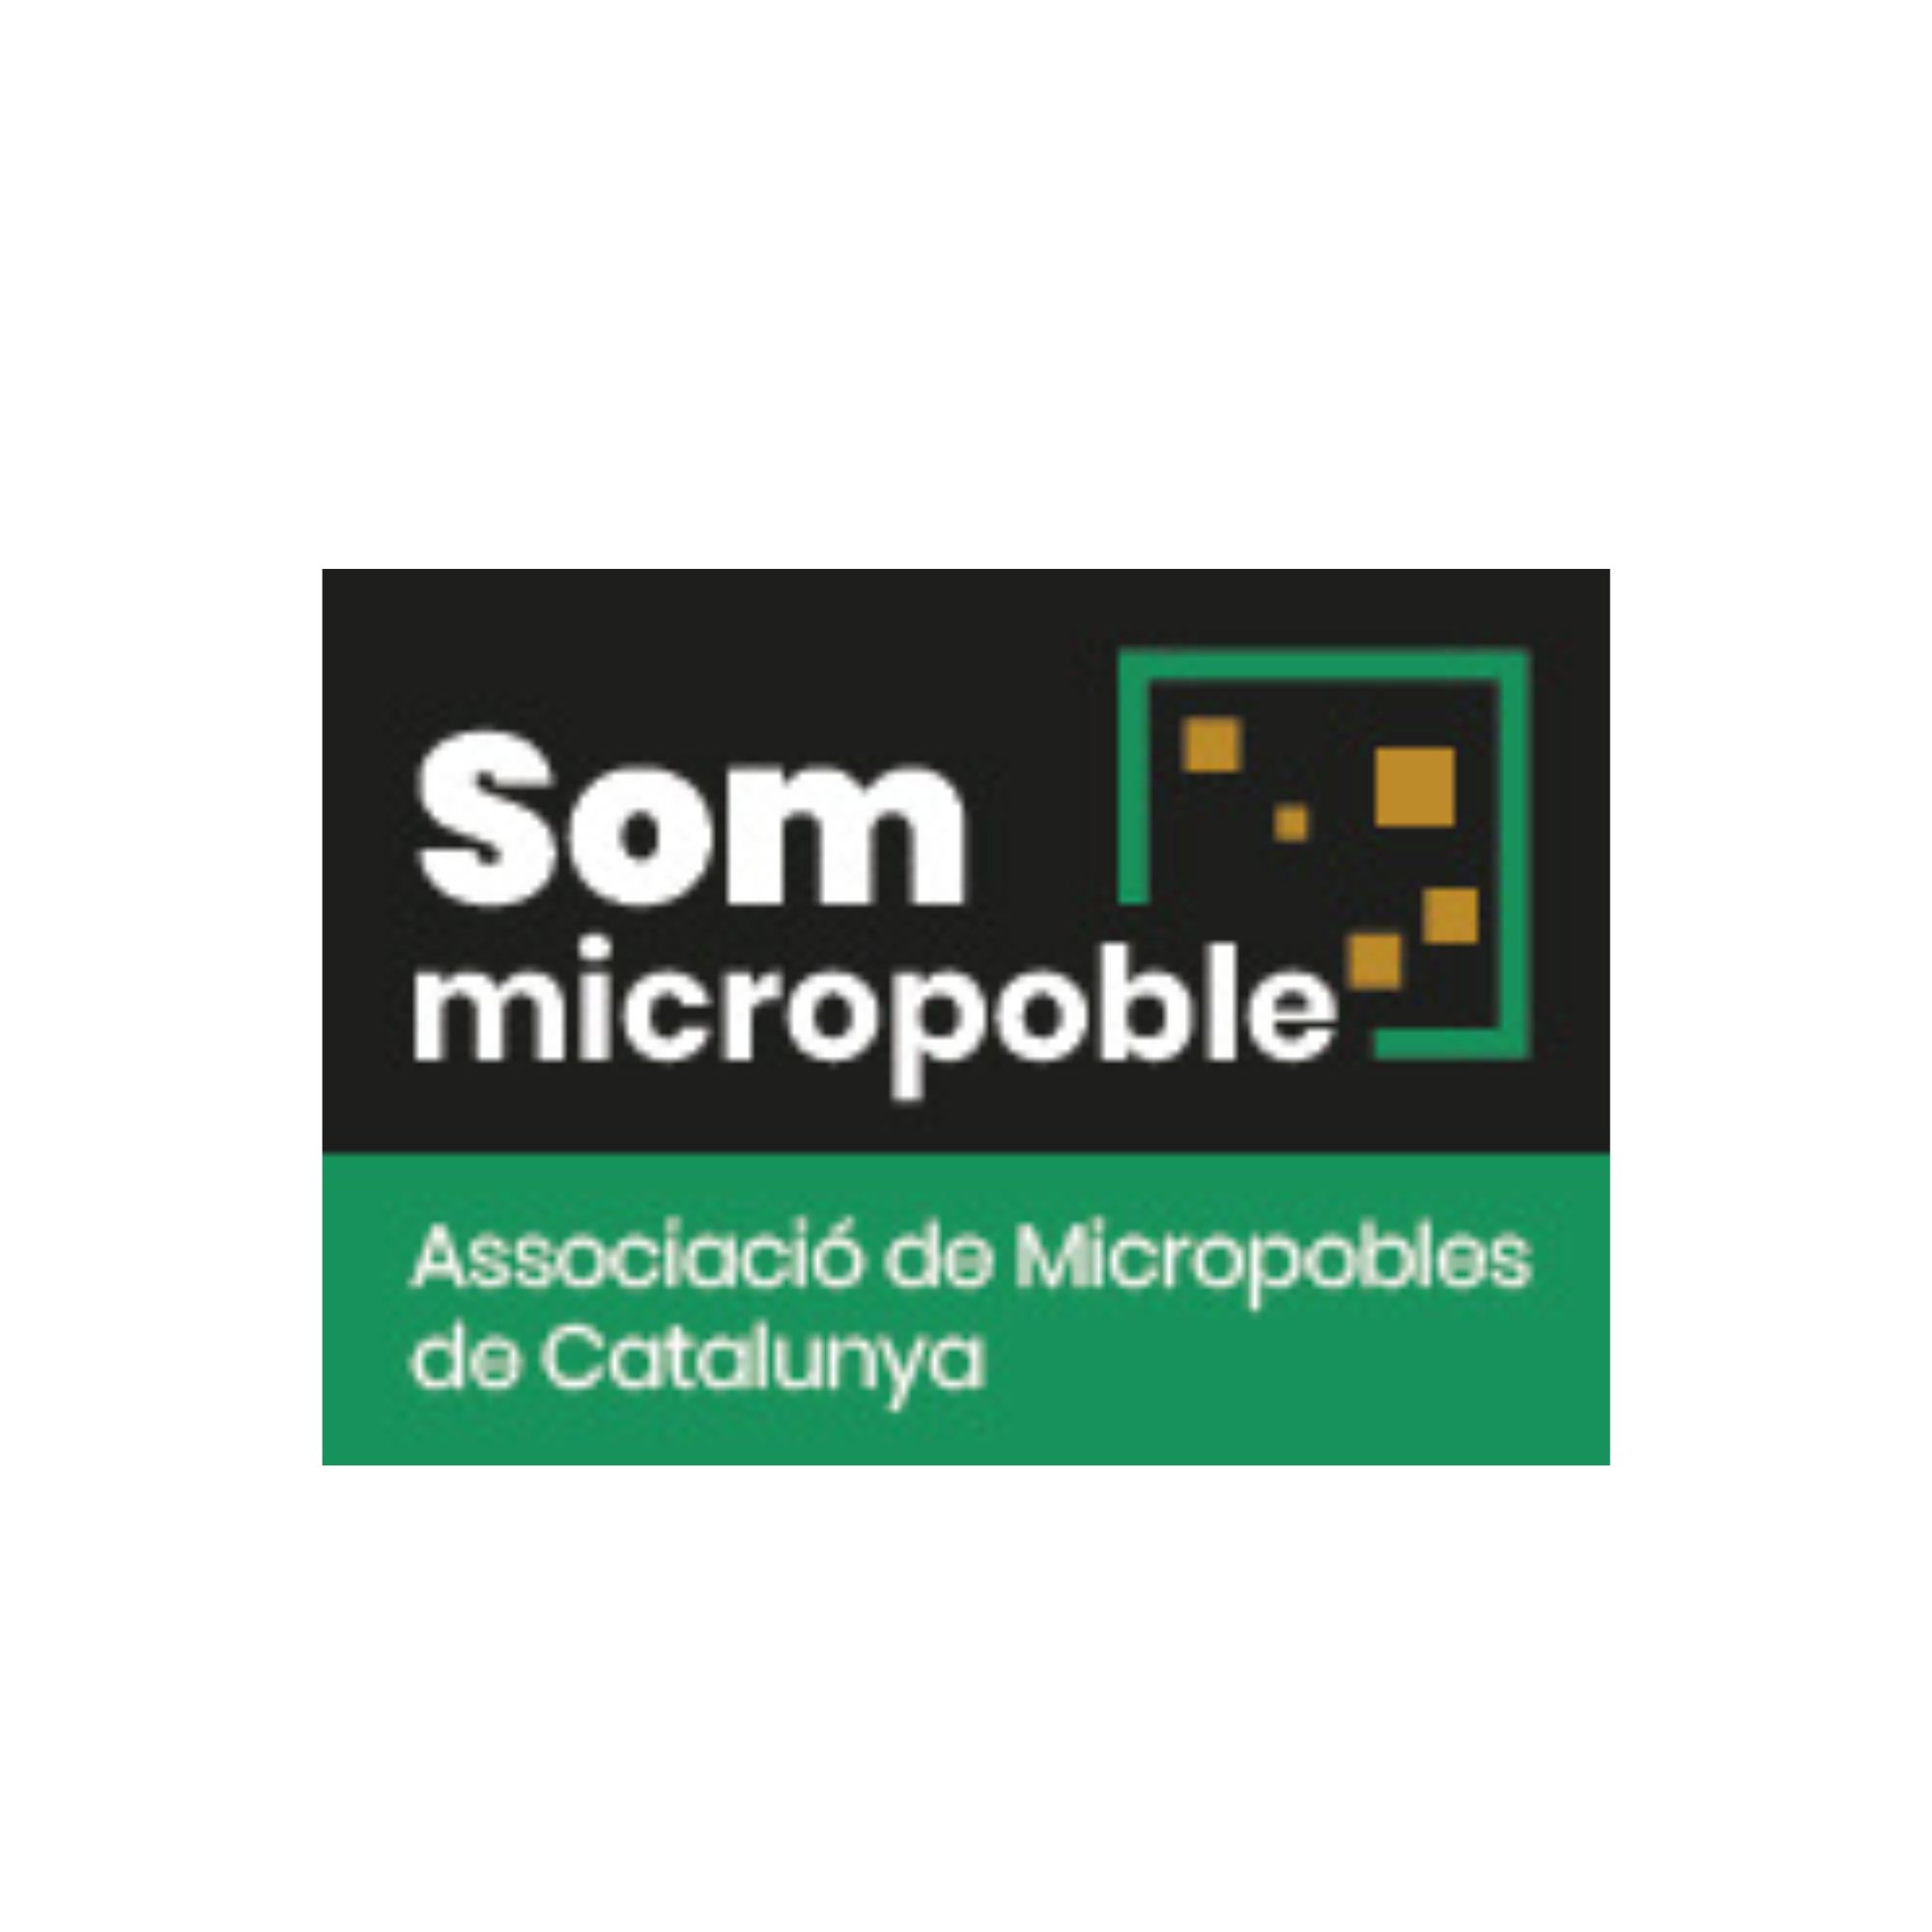 Micropobles